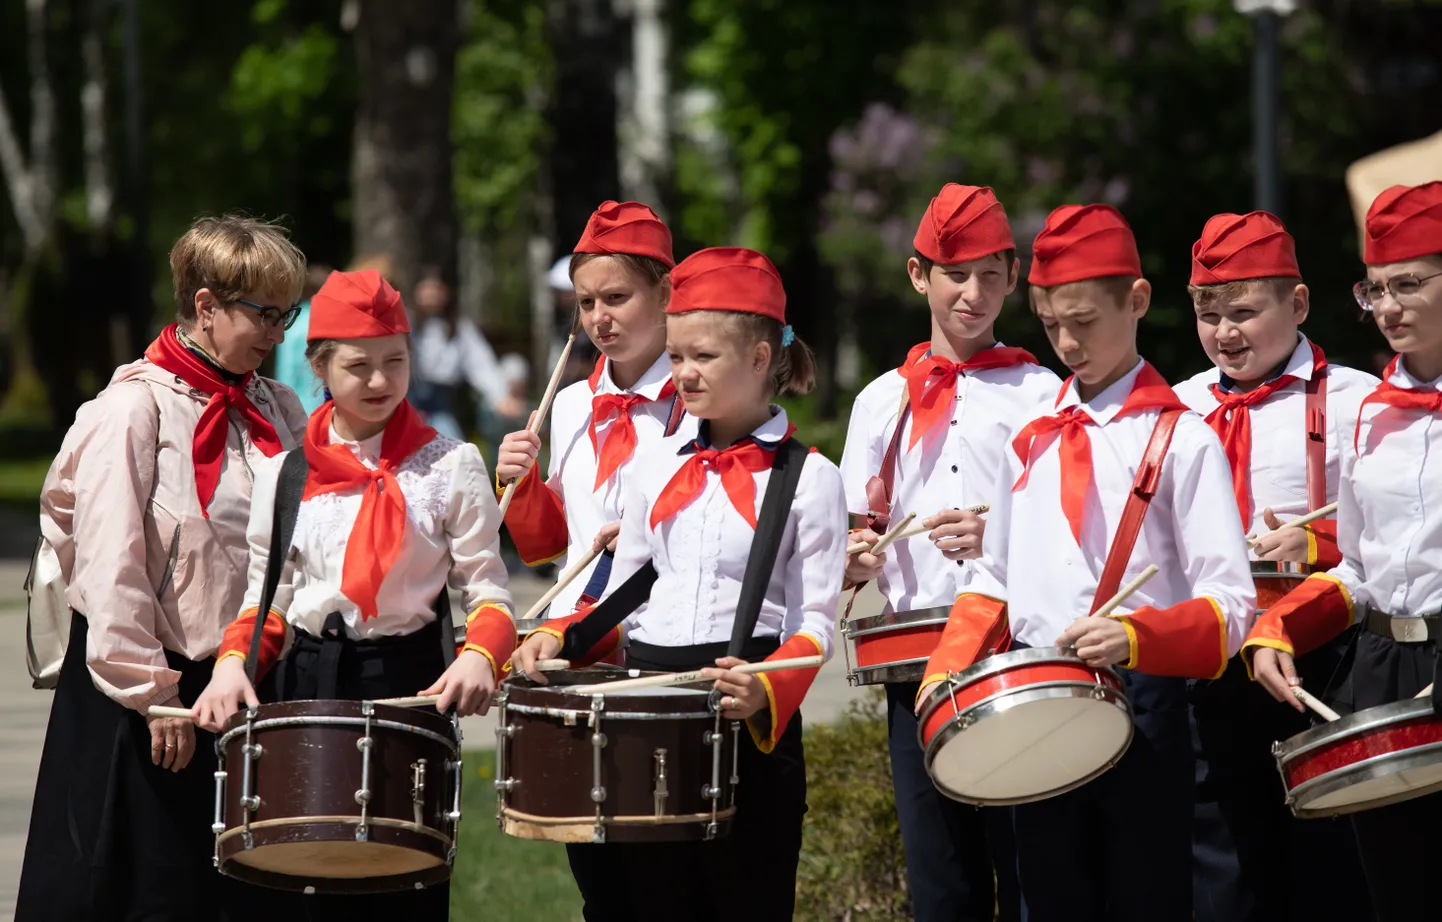 Vene noored tähistamas 19. mail 2022 Lipetskis Venemaa pioneeriorganisatsiooni 100. aastapäeva. Sel suvel lähevad Vene kooliõpilased Põhja-Koreasse suvelaagrisse